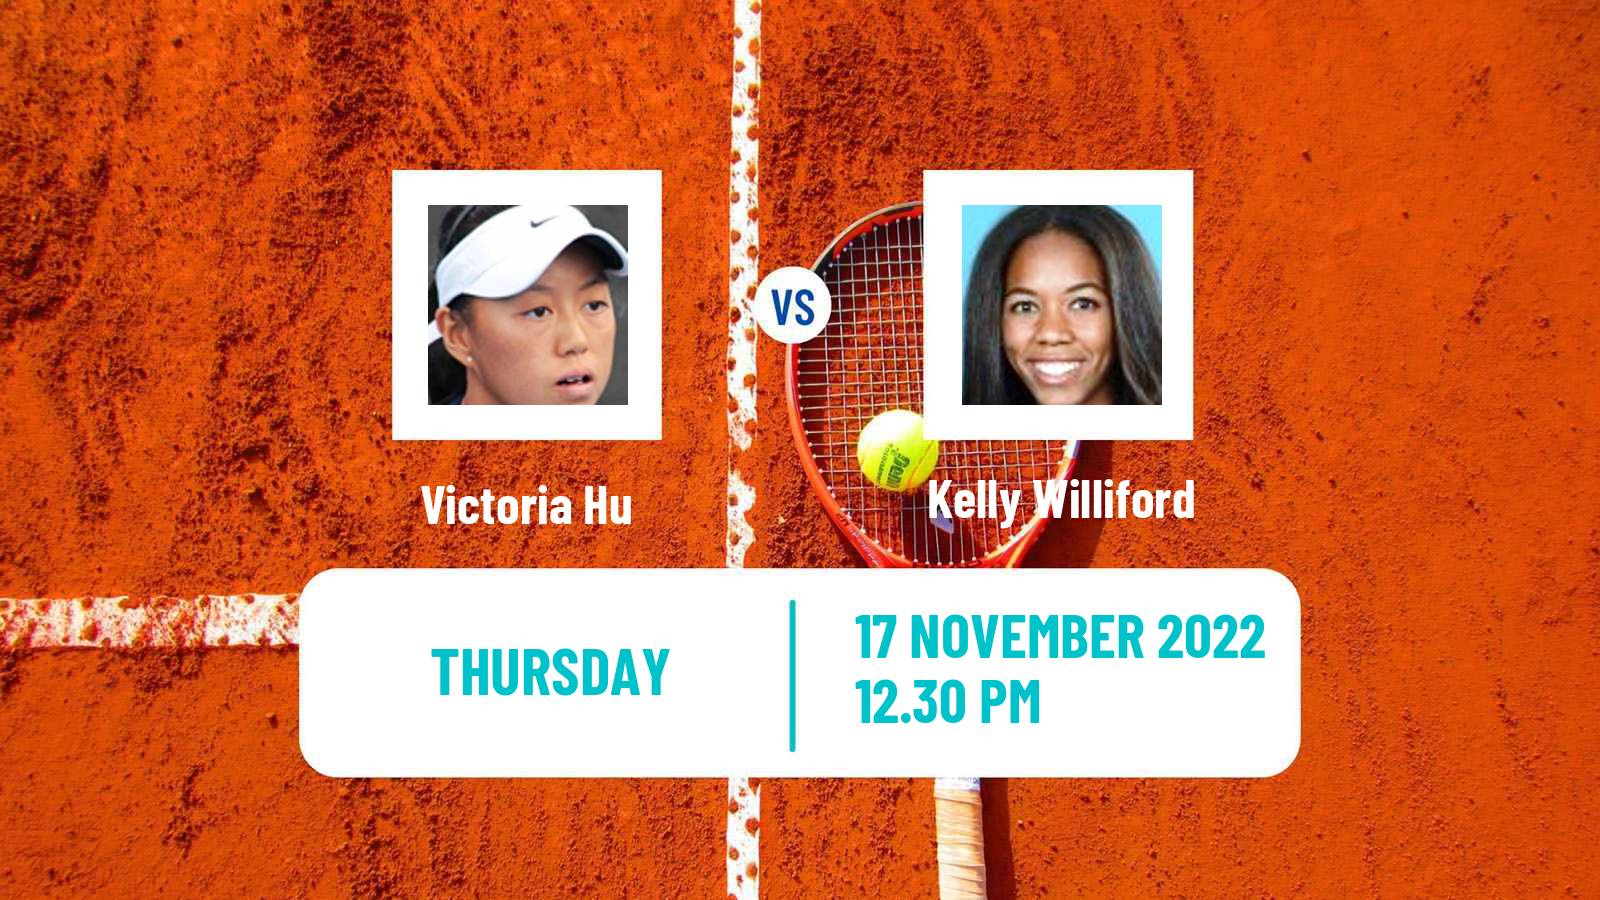 Tennis ITF Tournaments Victoria Hu - Kelly Williford